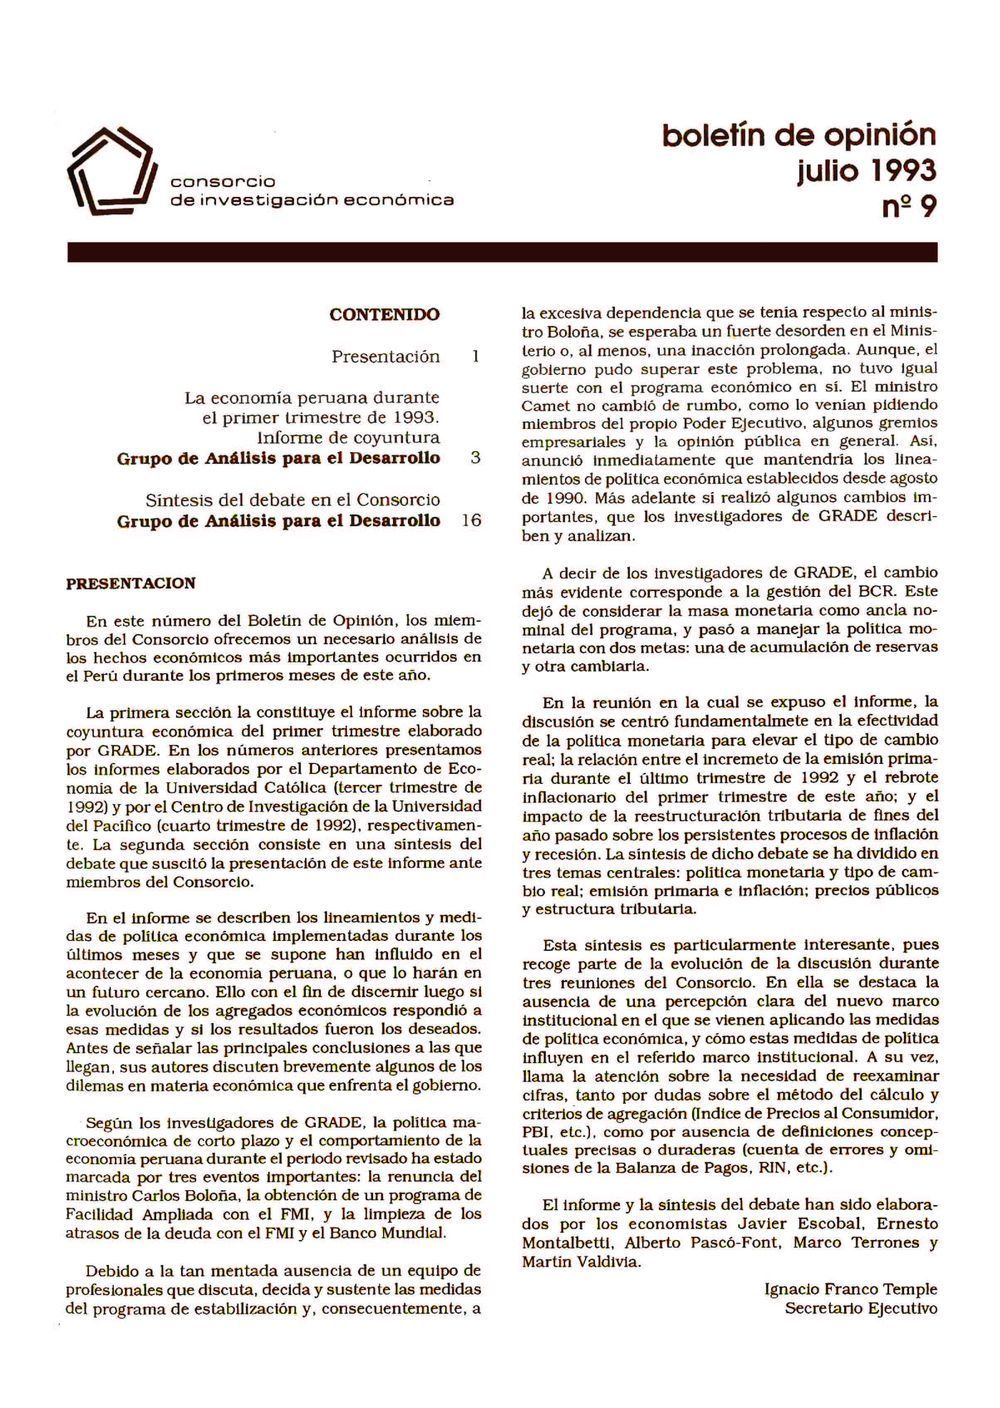 Boletín de opinión: Análisis de la economía peruana, 1993-I